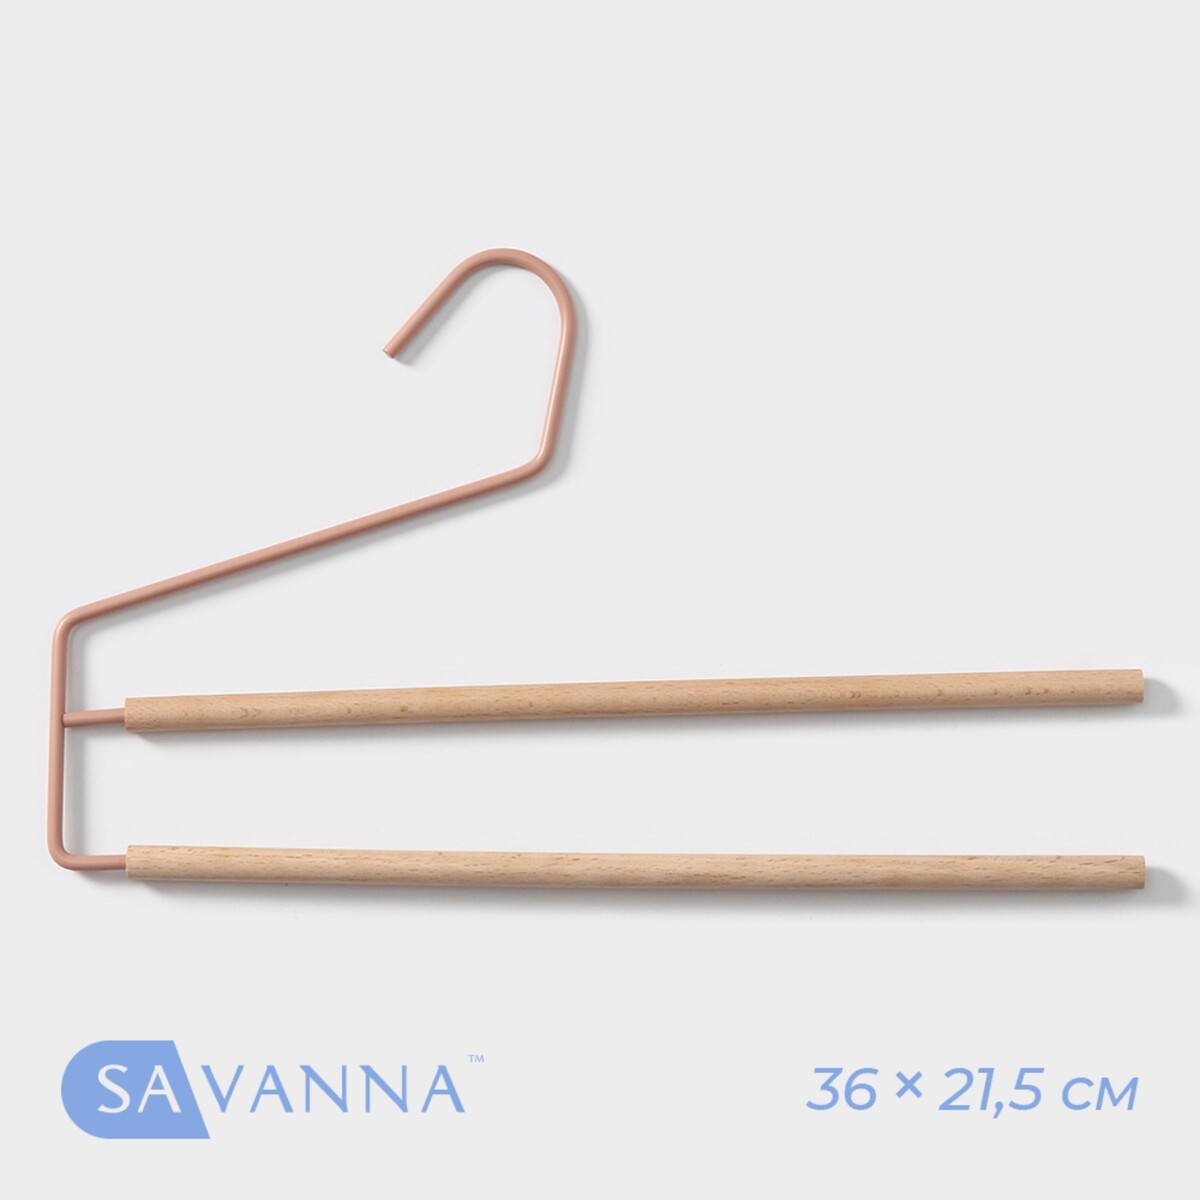  -       savanna wood, 36 21,5 1,1 ,  